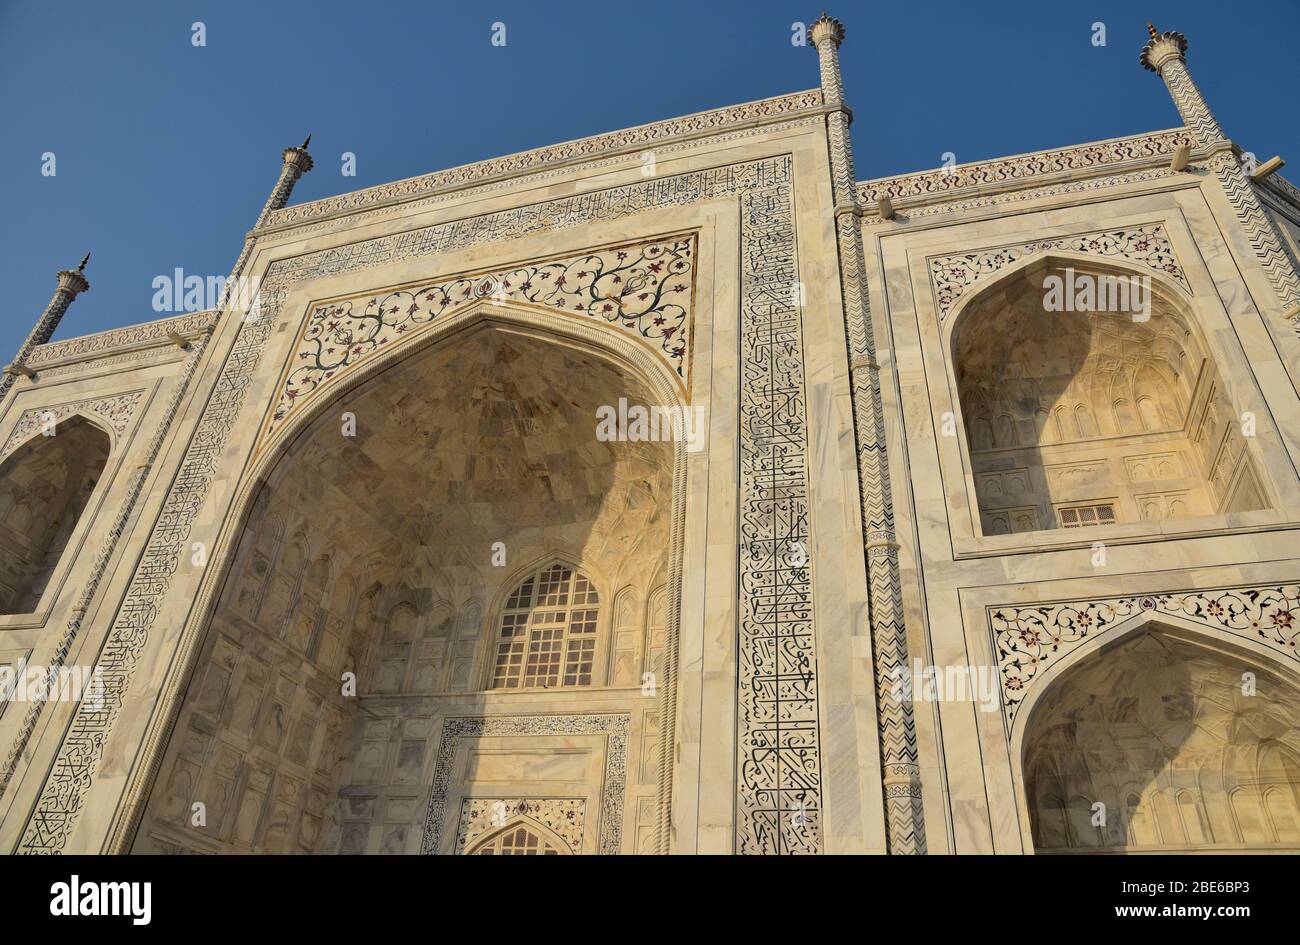 Kalligraphie von arabischem Ayaat, reflektierende und dekorative Fliesen, eingelassene Bögen und elfenbeinweißer Marmor bilden die Schönheit des Taj Mahal, Agra, Indien. Stockfoto